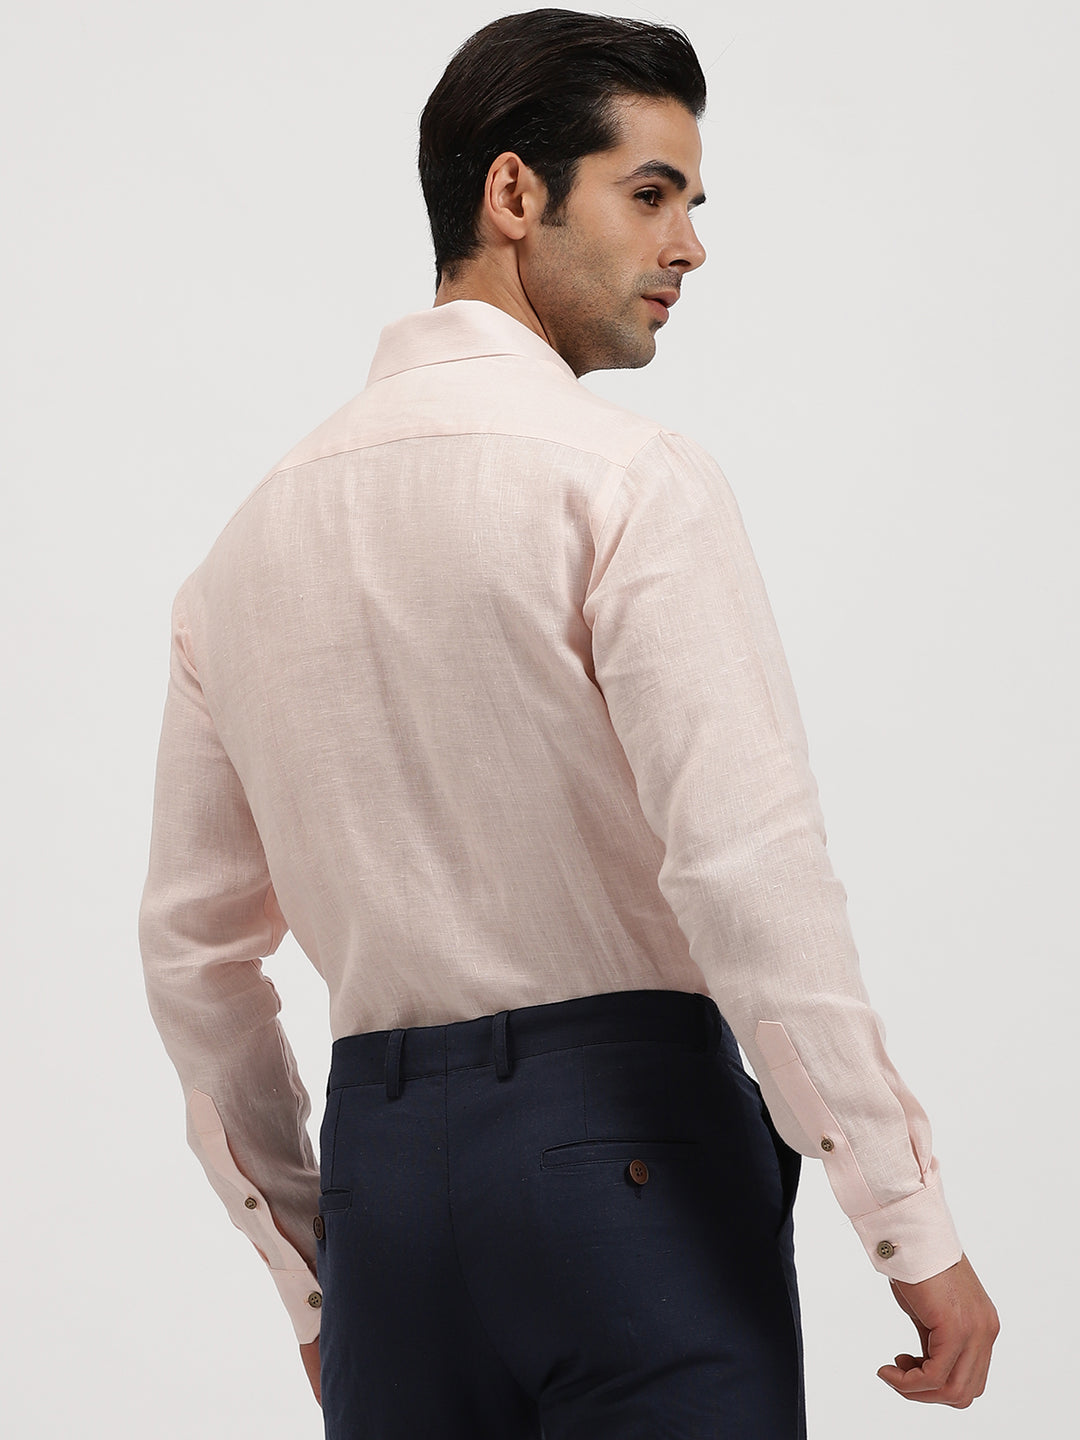 Austin - Pure Linen Button Down Full Sleeve Shirt - Light Pink